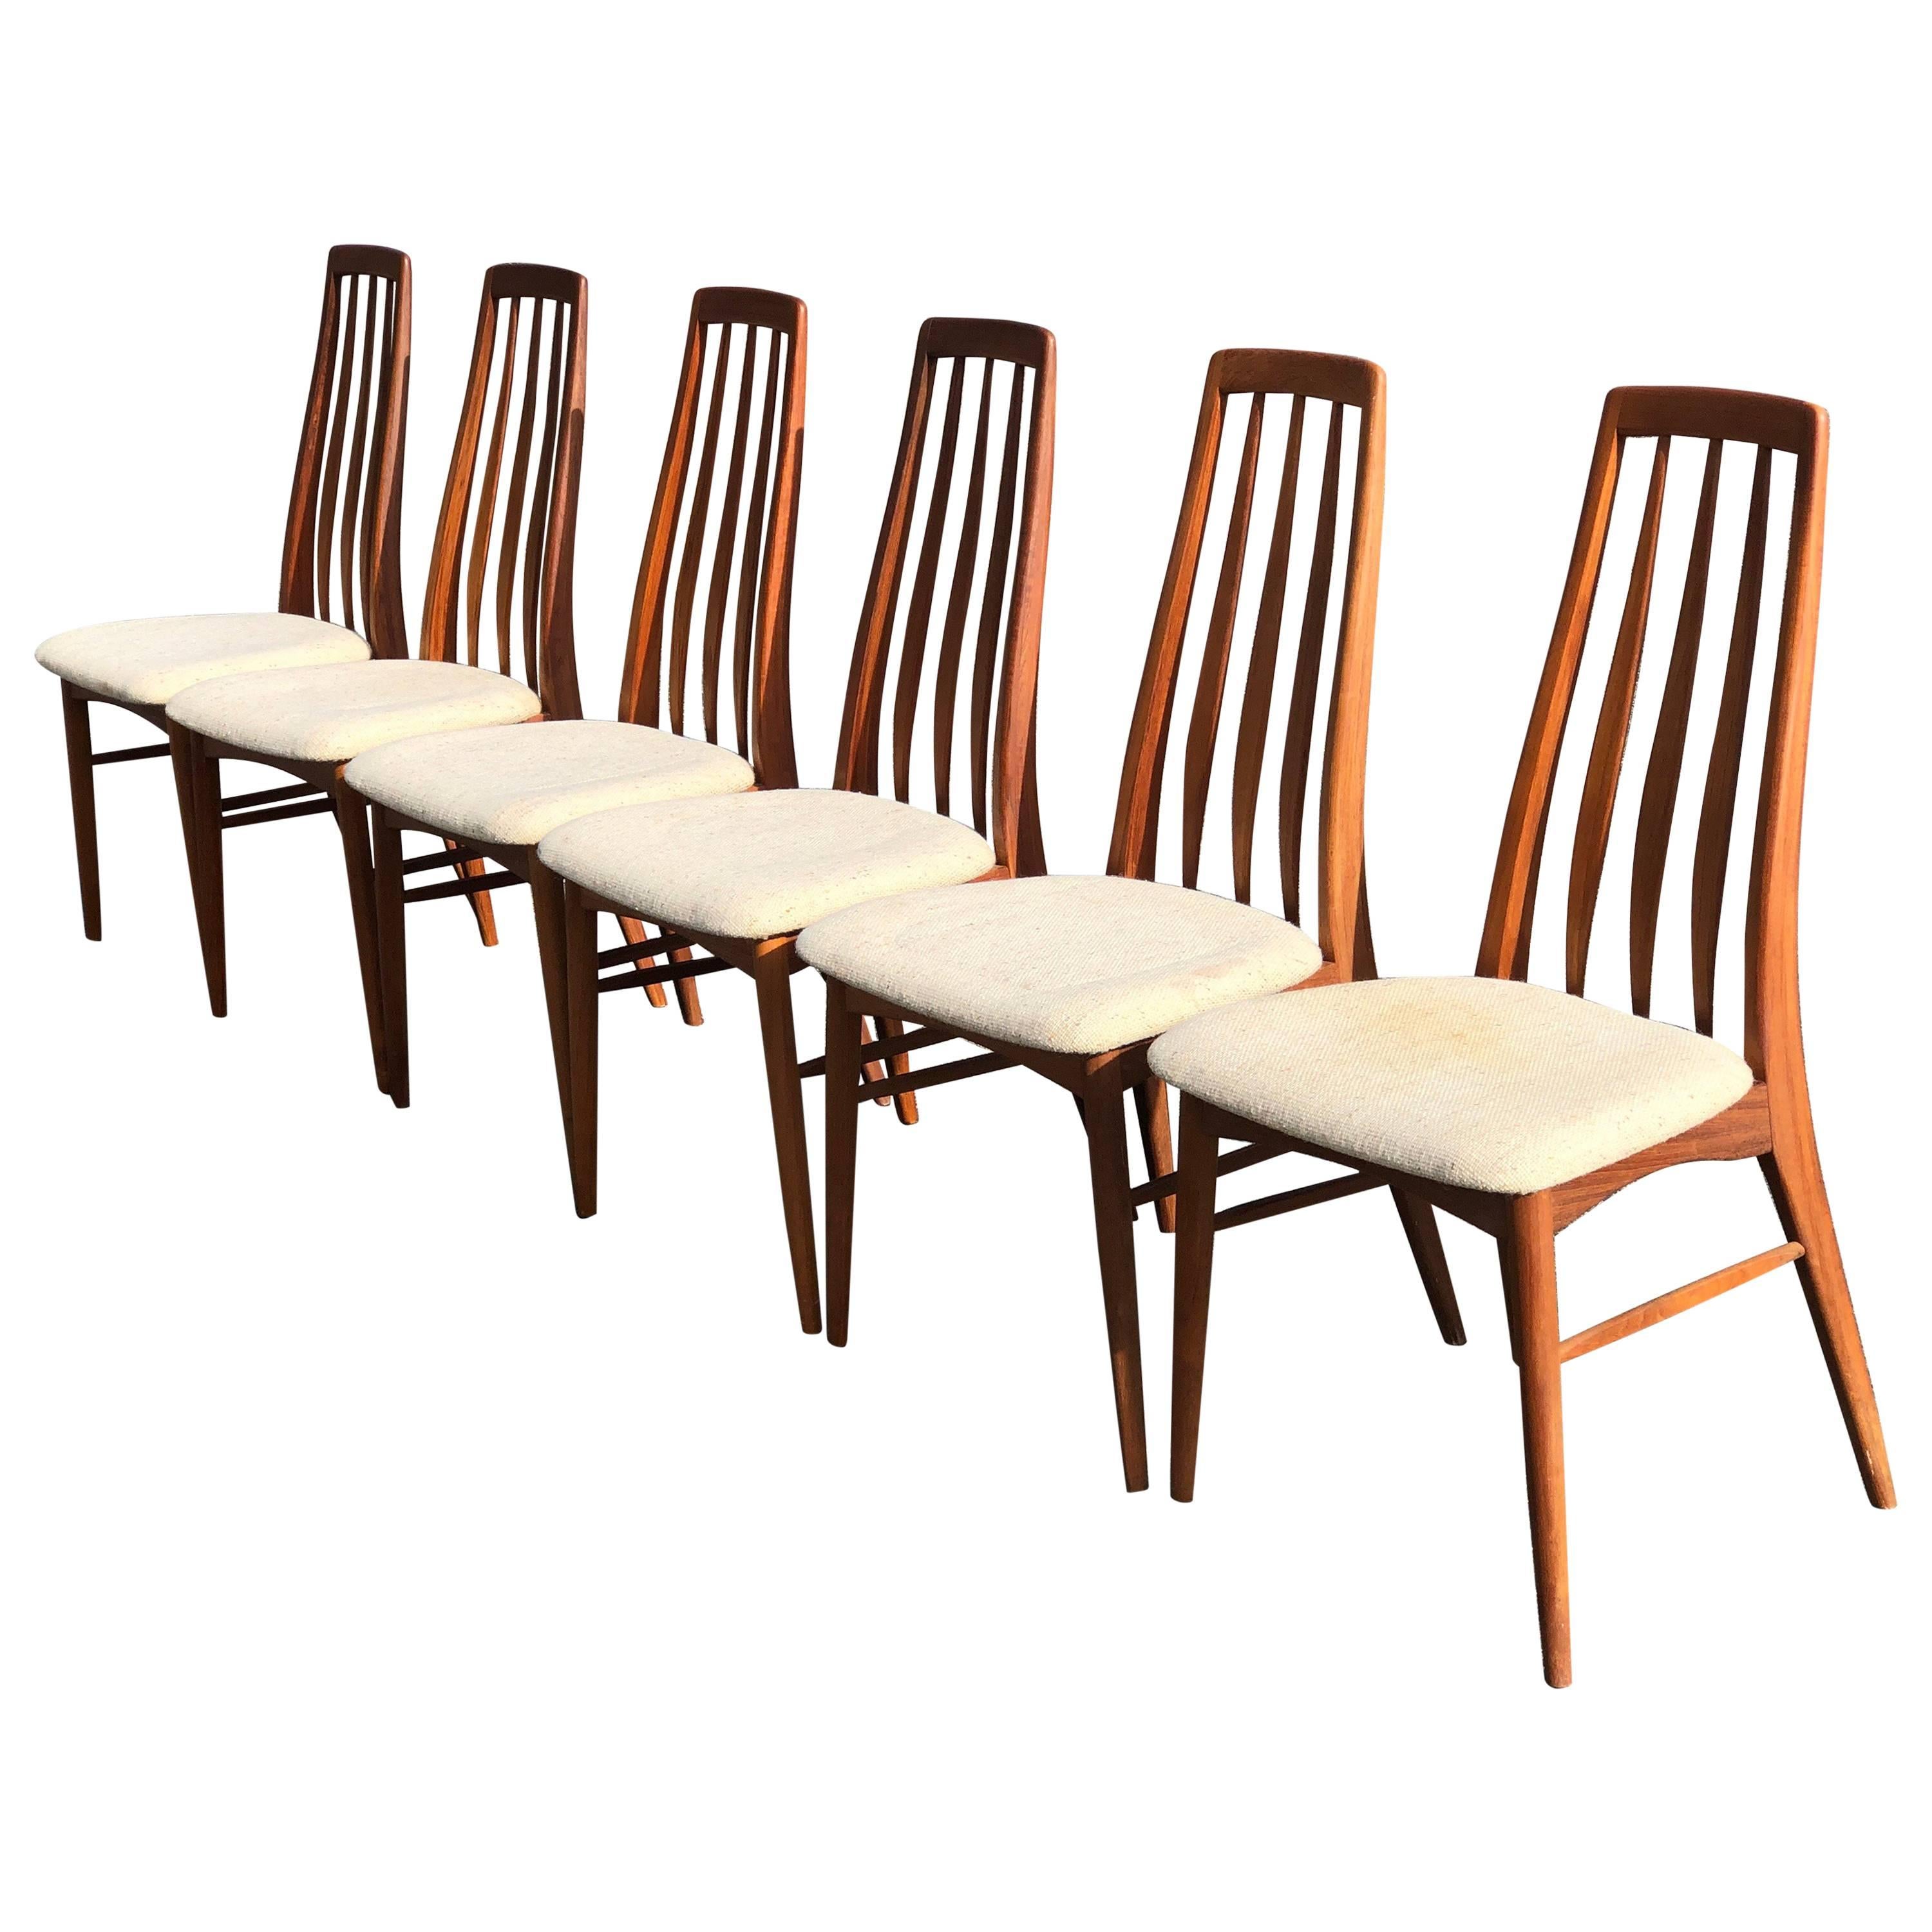 Set of Six Teak “Eva” Chair by Niels Koefoed for Hornslet Mobelfabrik in Teak